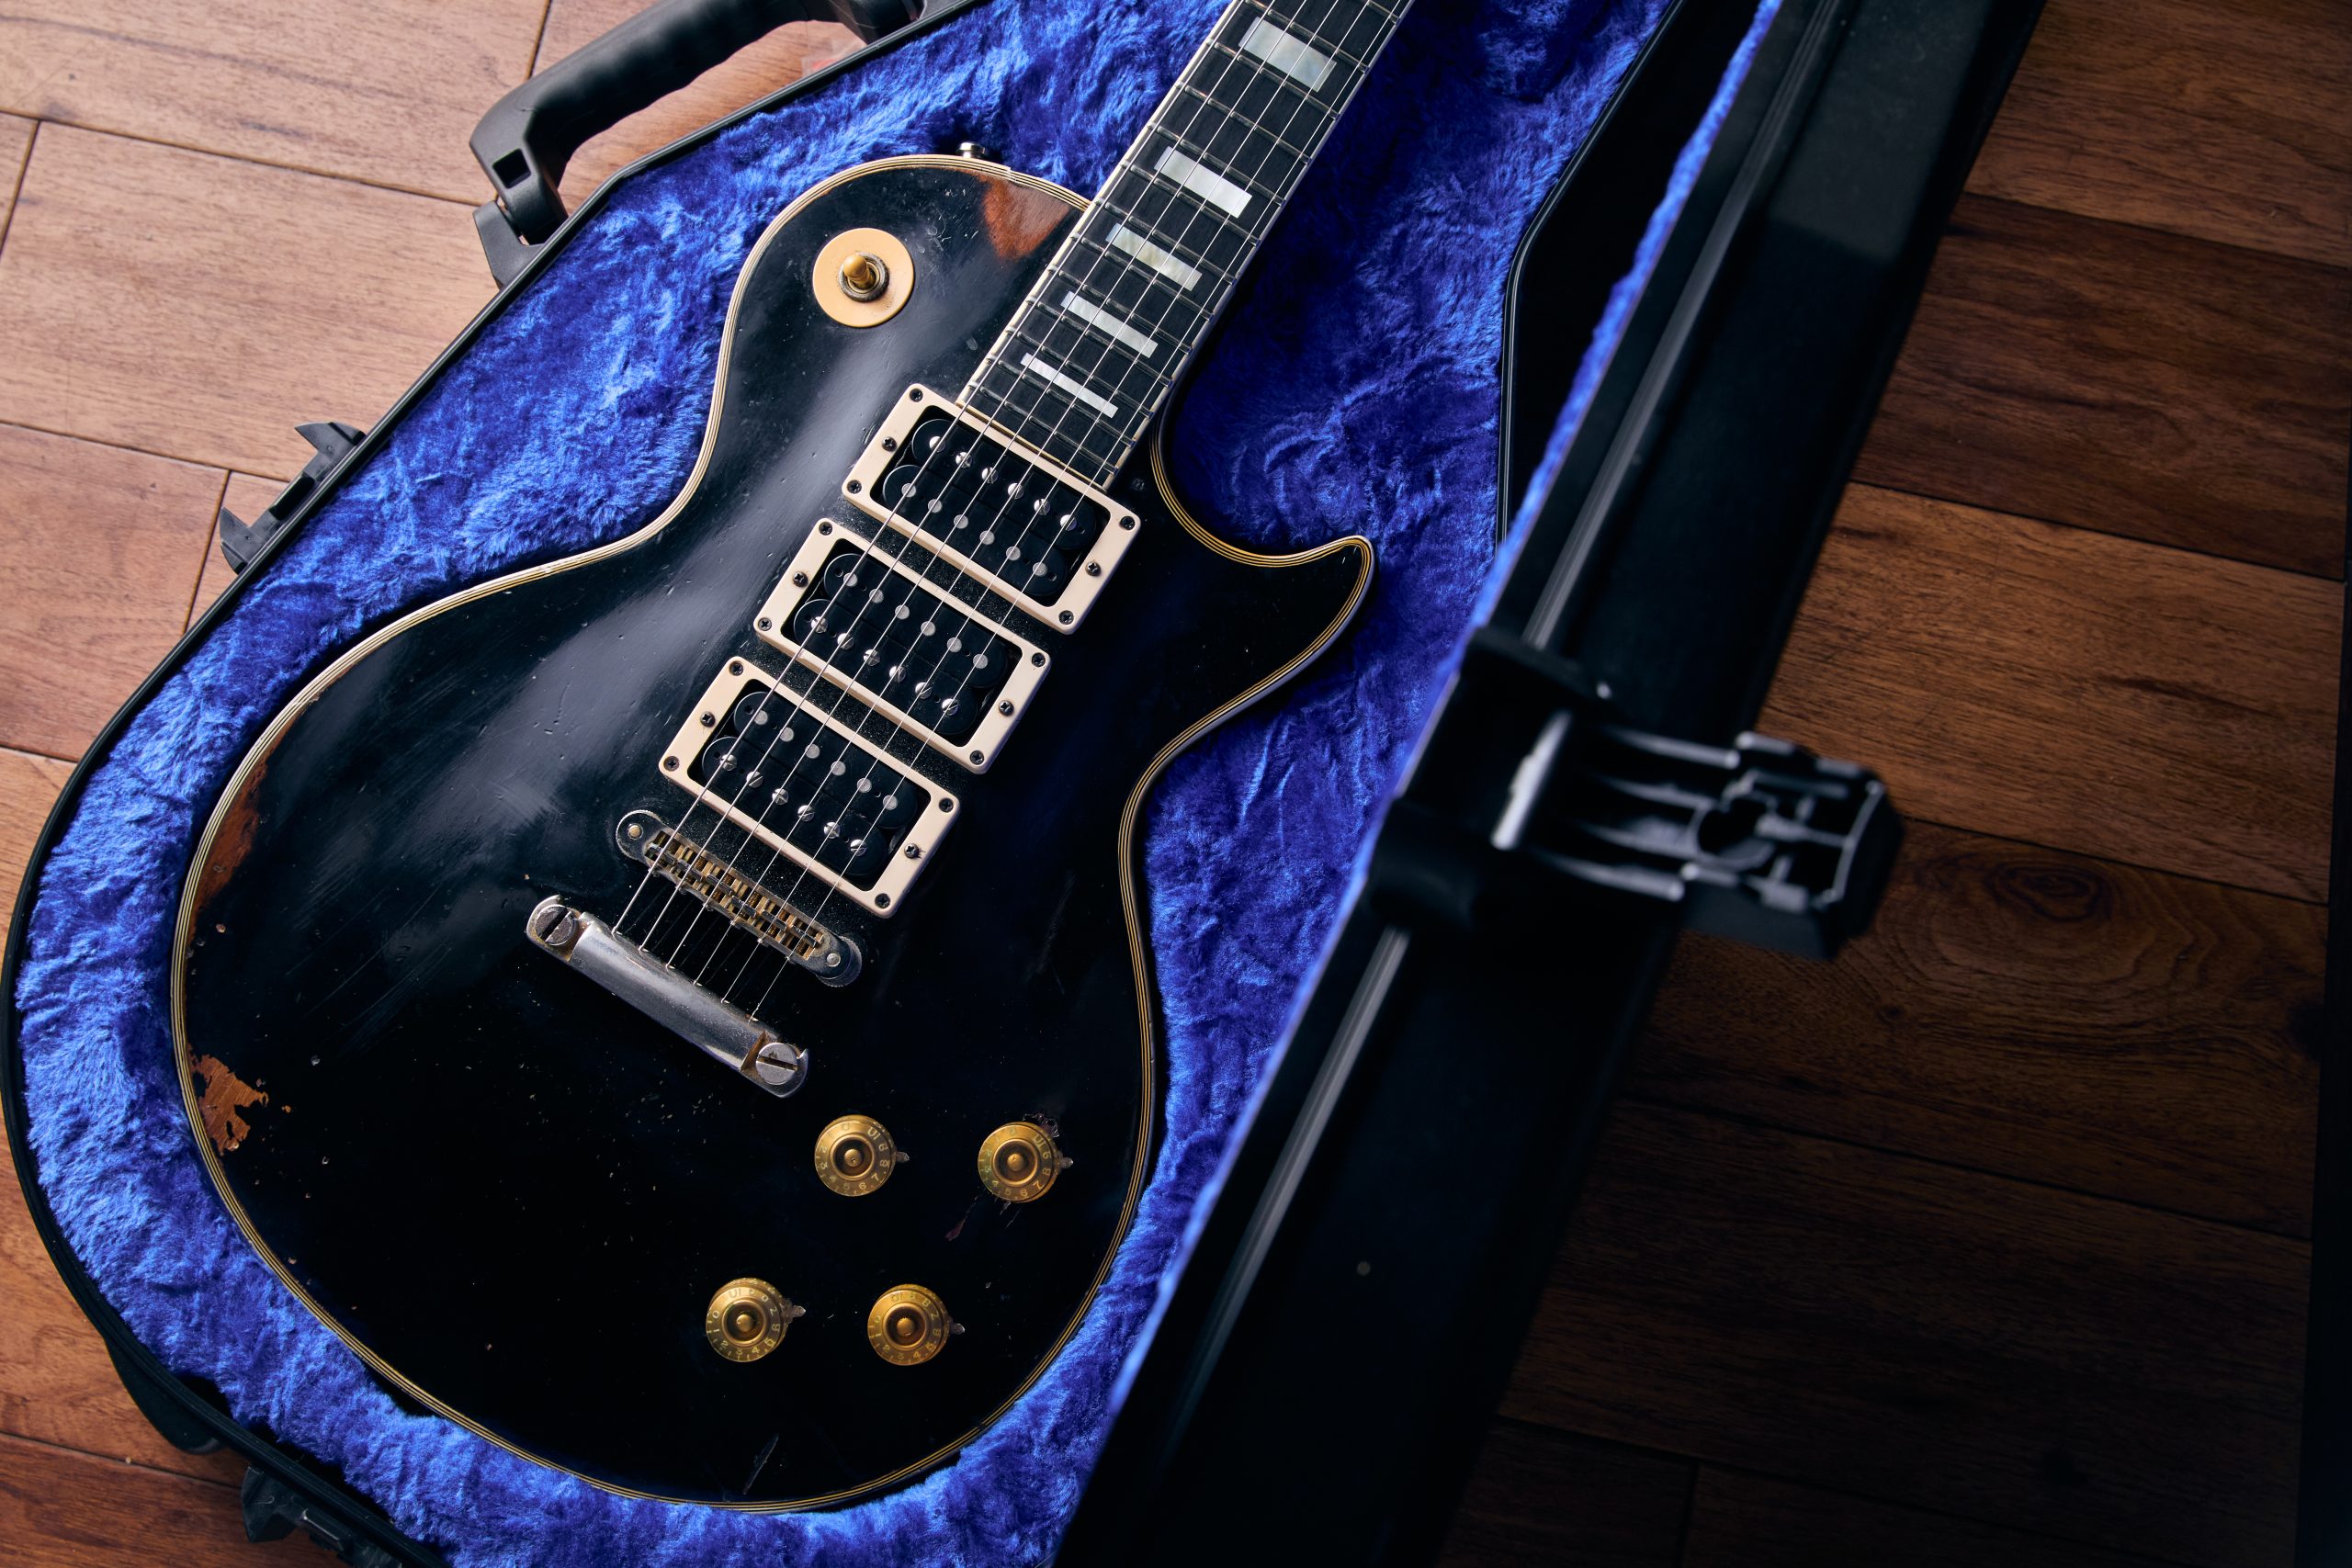 Peter Frampton's Phenix Les Paul Custom guitar